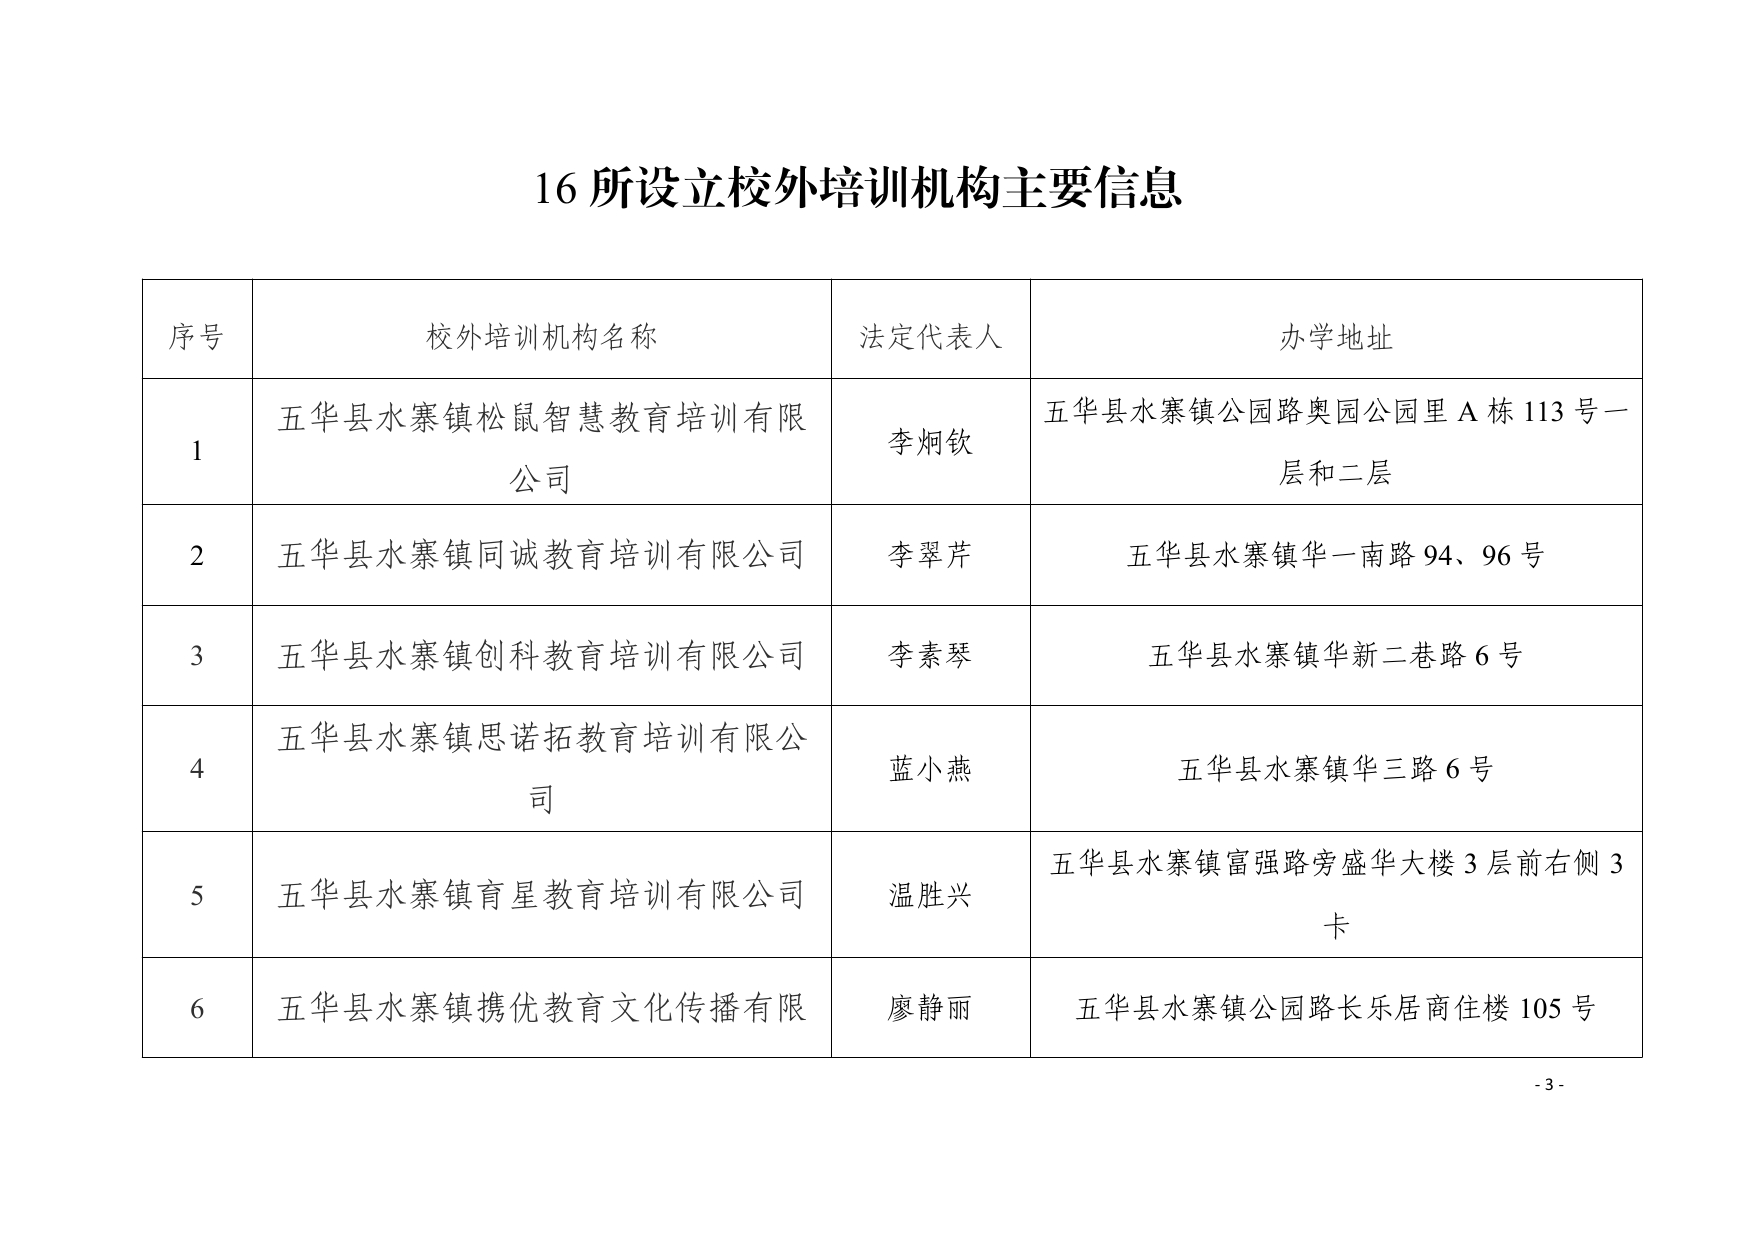 关于同意五华县水寨镇同诚教育培训有限公司等十六所校外培训机构设立的公示0002.jpg